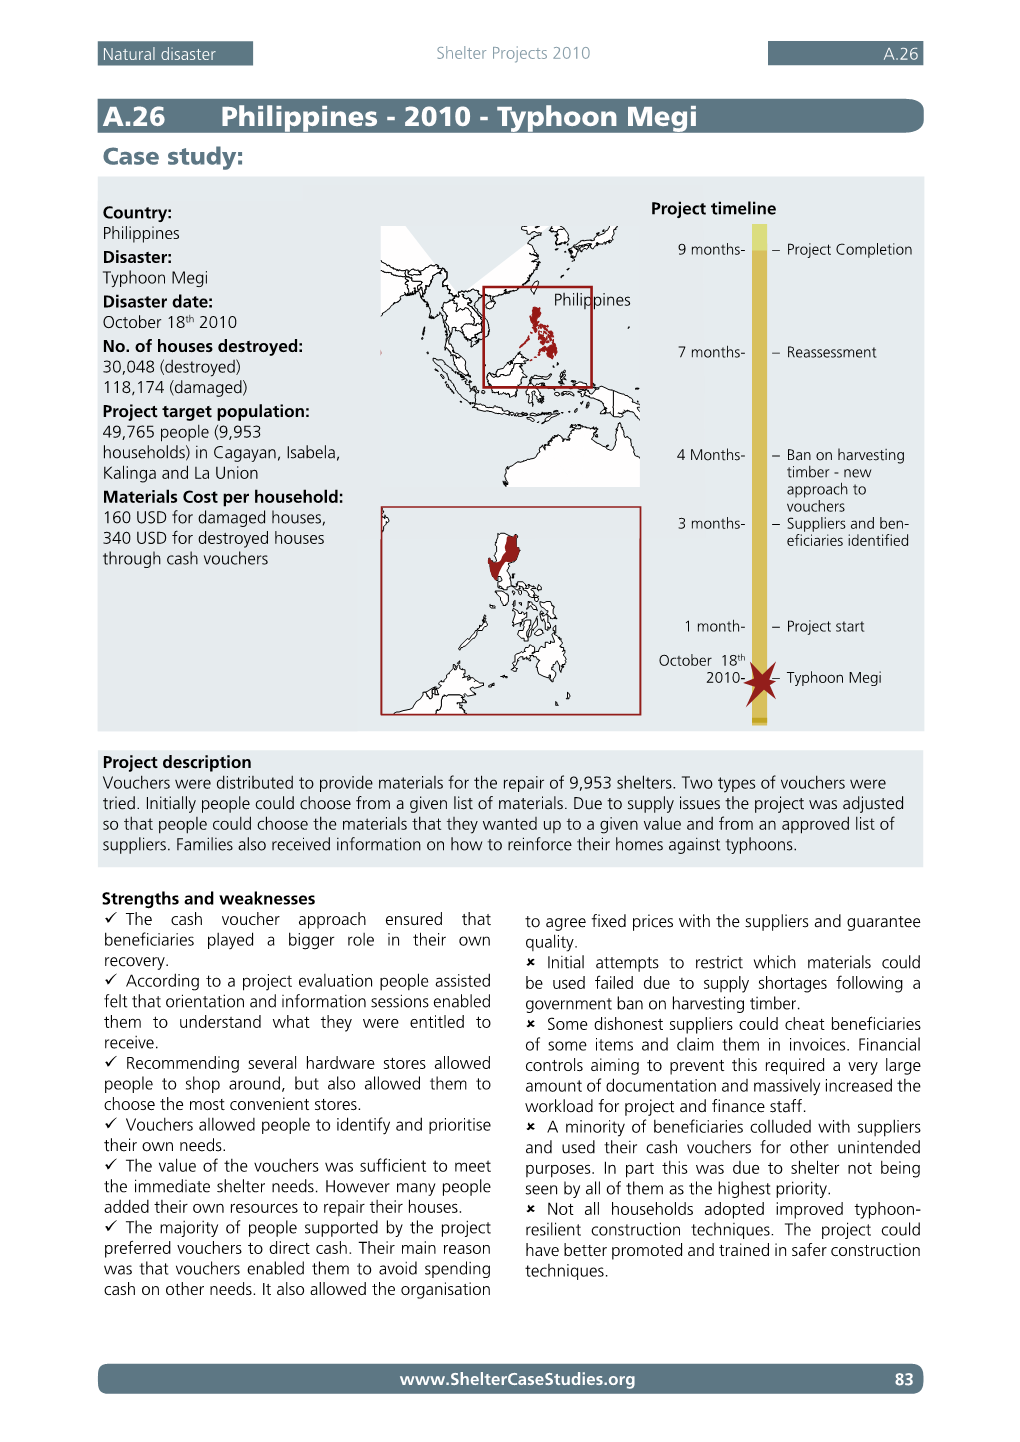 A.26 Philippines - 2010 - Typhoon Megi Case Study